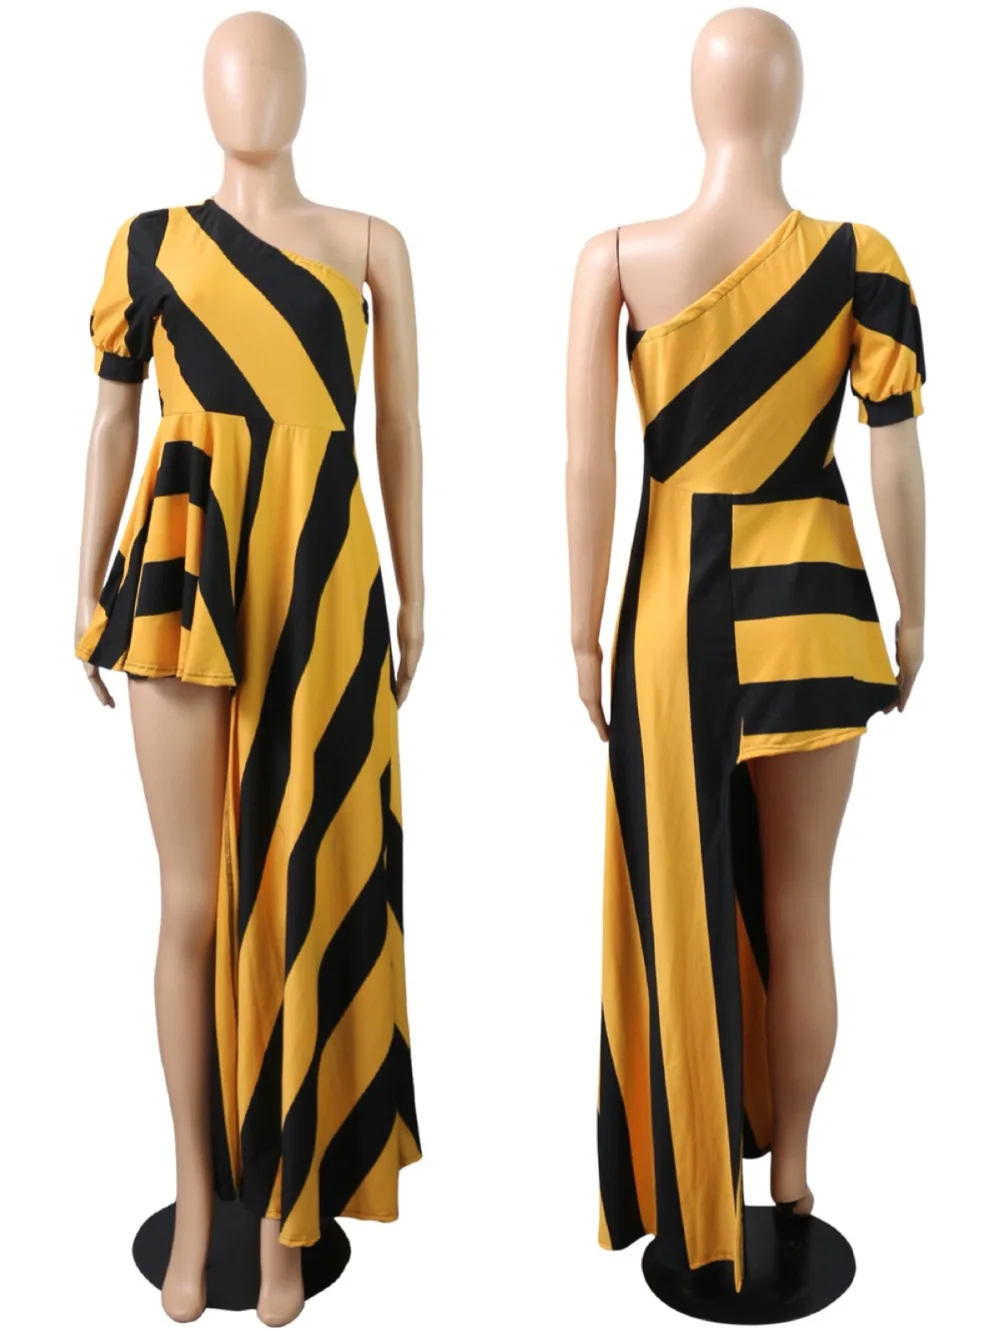 5 размеров S M L XL XXL XXXL стиль африканская женская одежда Дашики модный принт эластичная ткань креативное платье